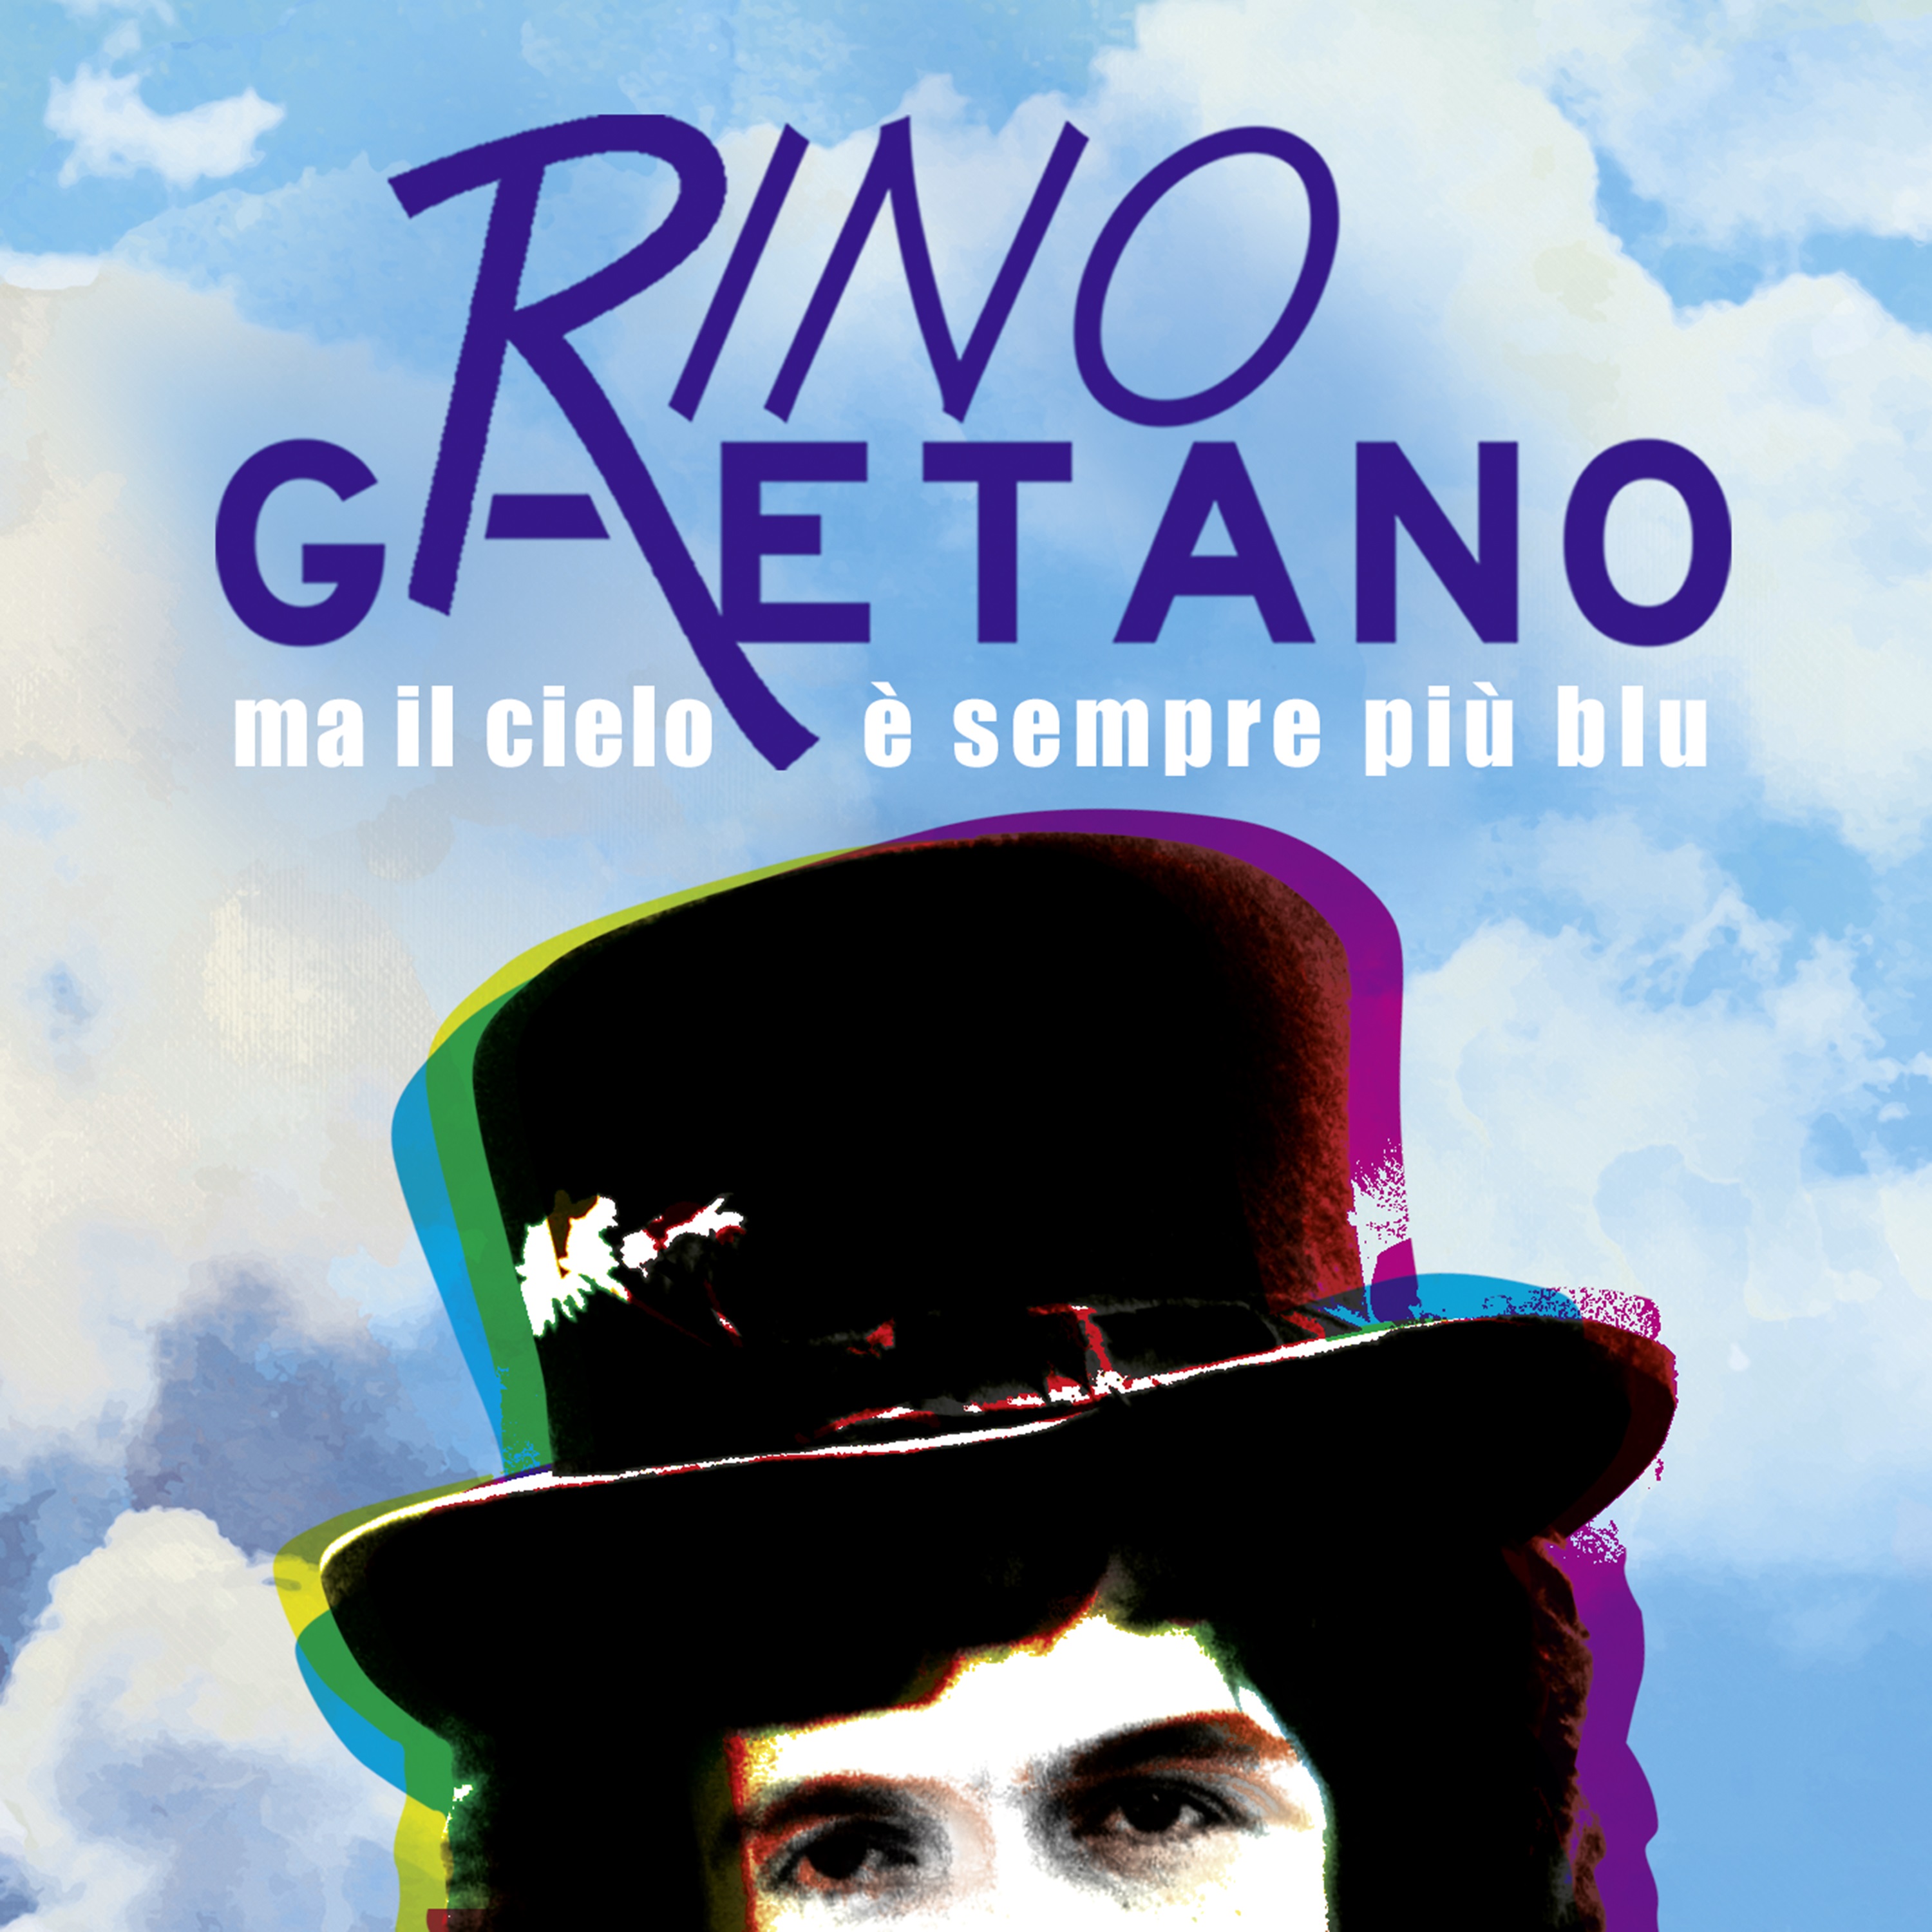 Ma il cielo è sempre più blu: il classico di Rino Gaetano disponibile in  extended version – BitsRebel